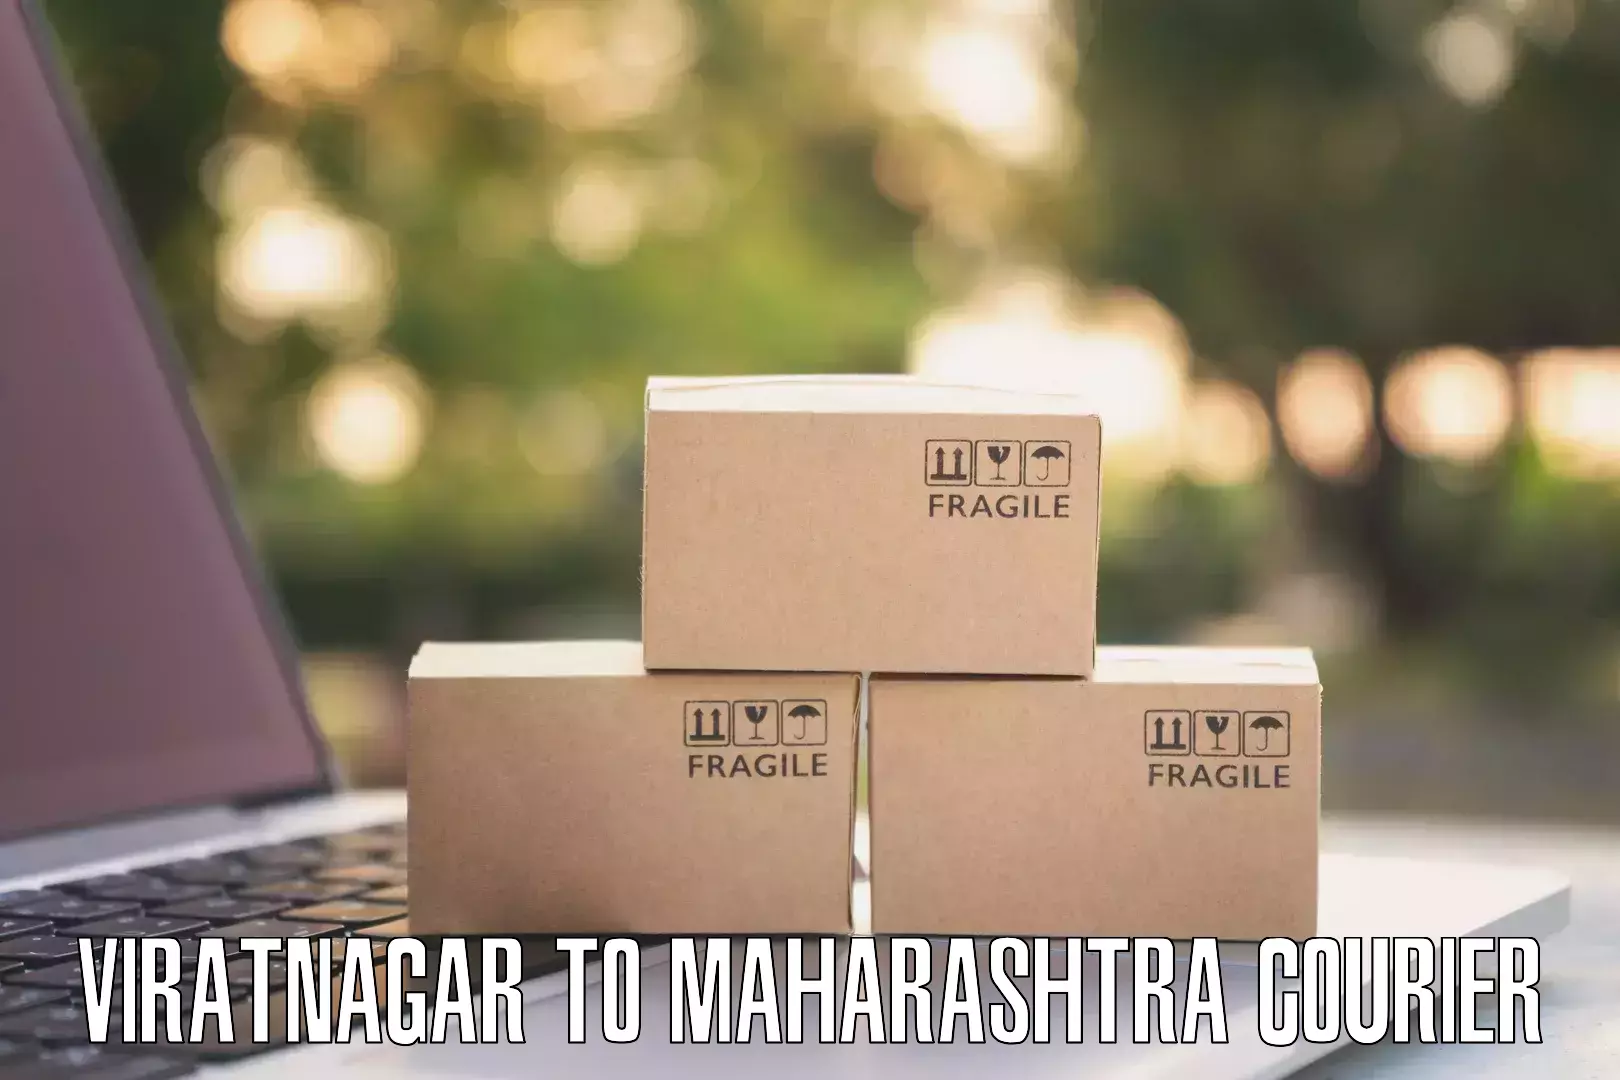 24/7 courier service Viratnagar to Washim